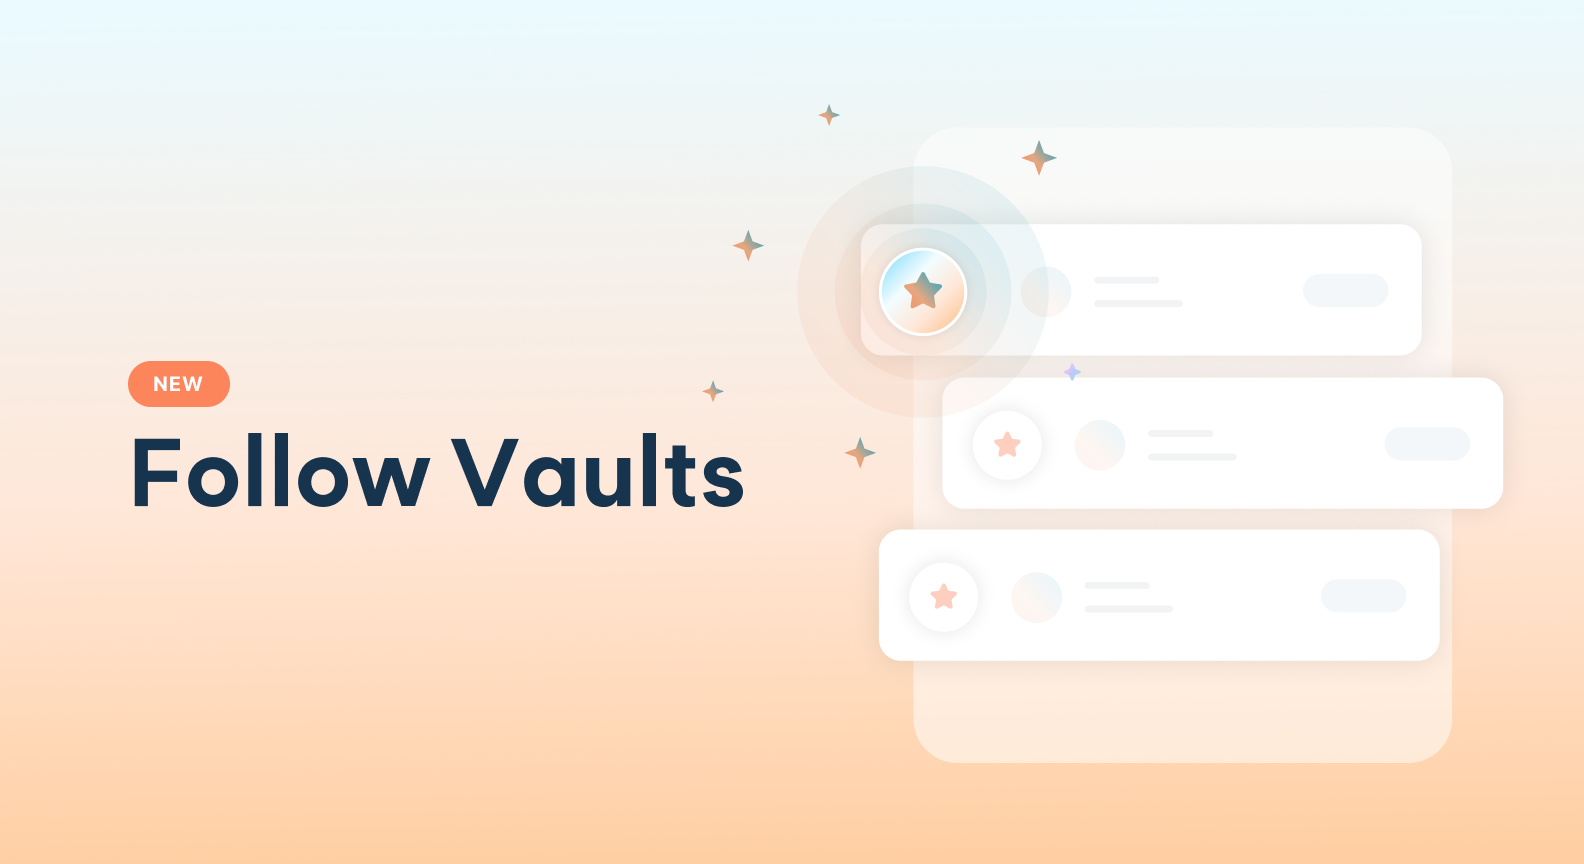 Introducing Follow Vaults